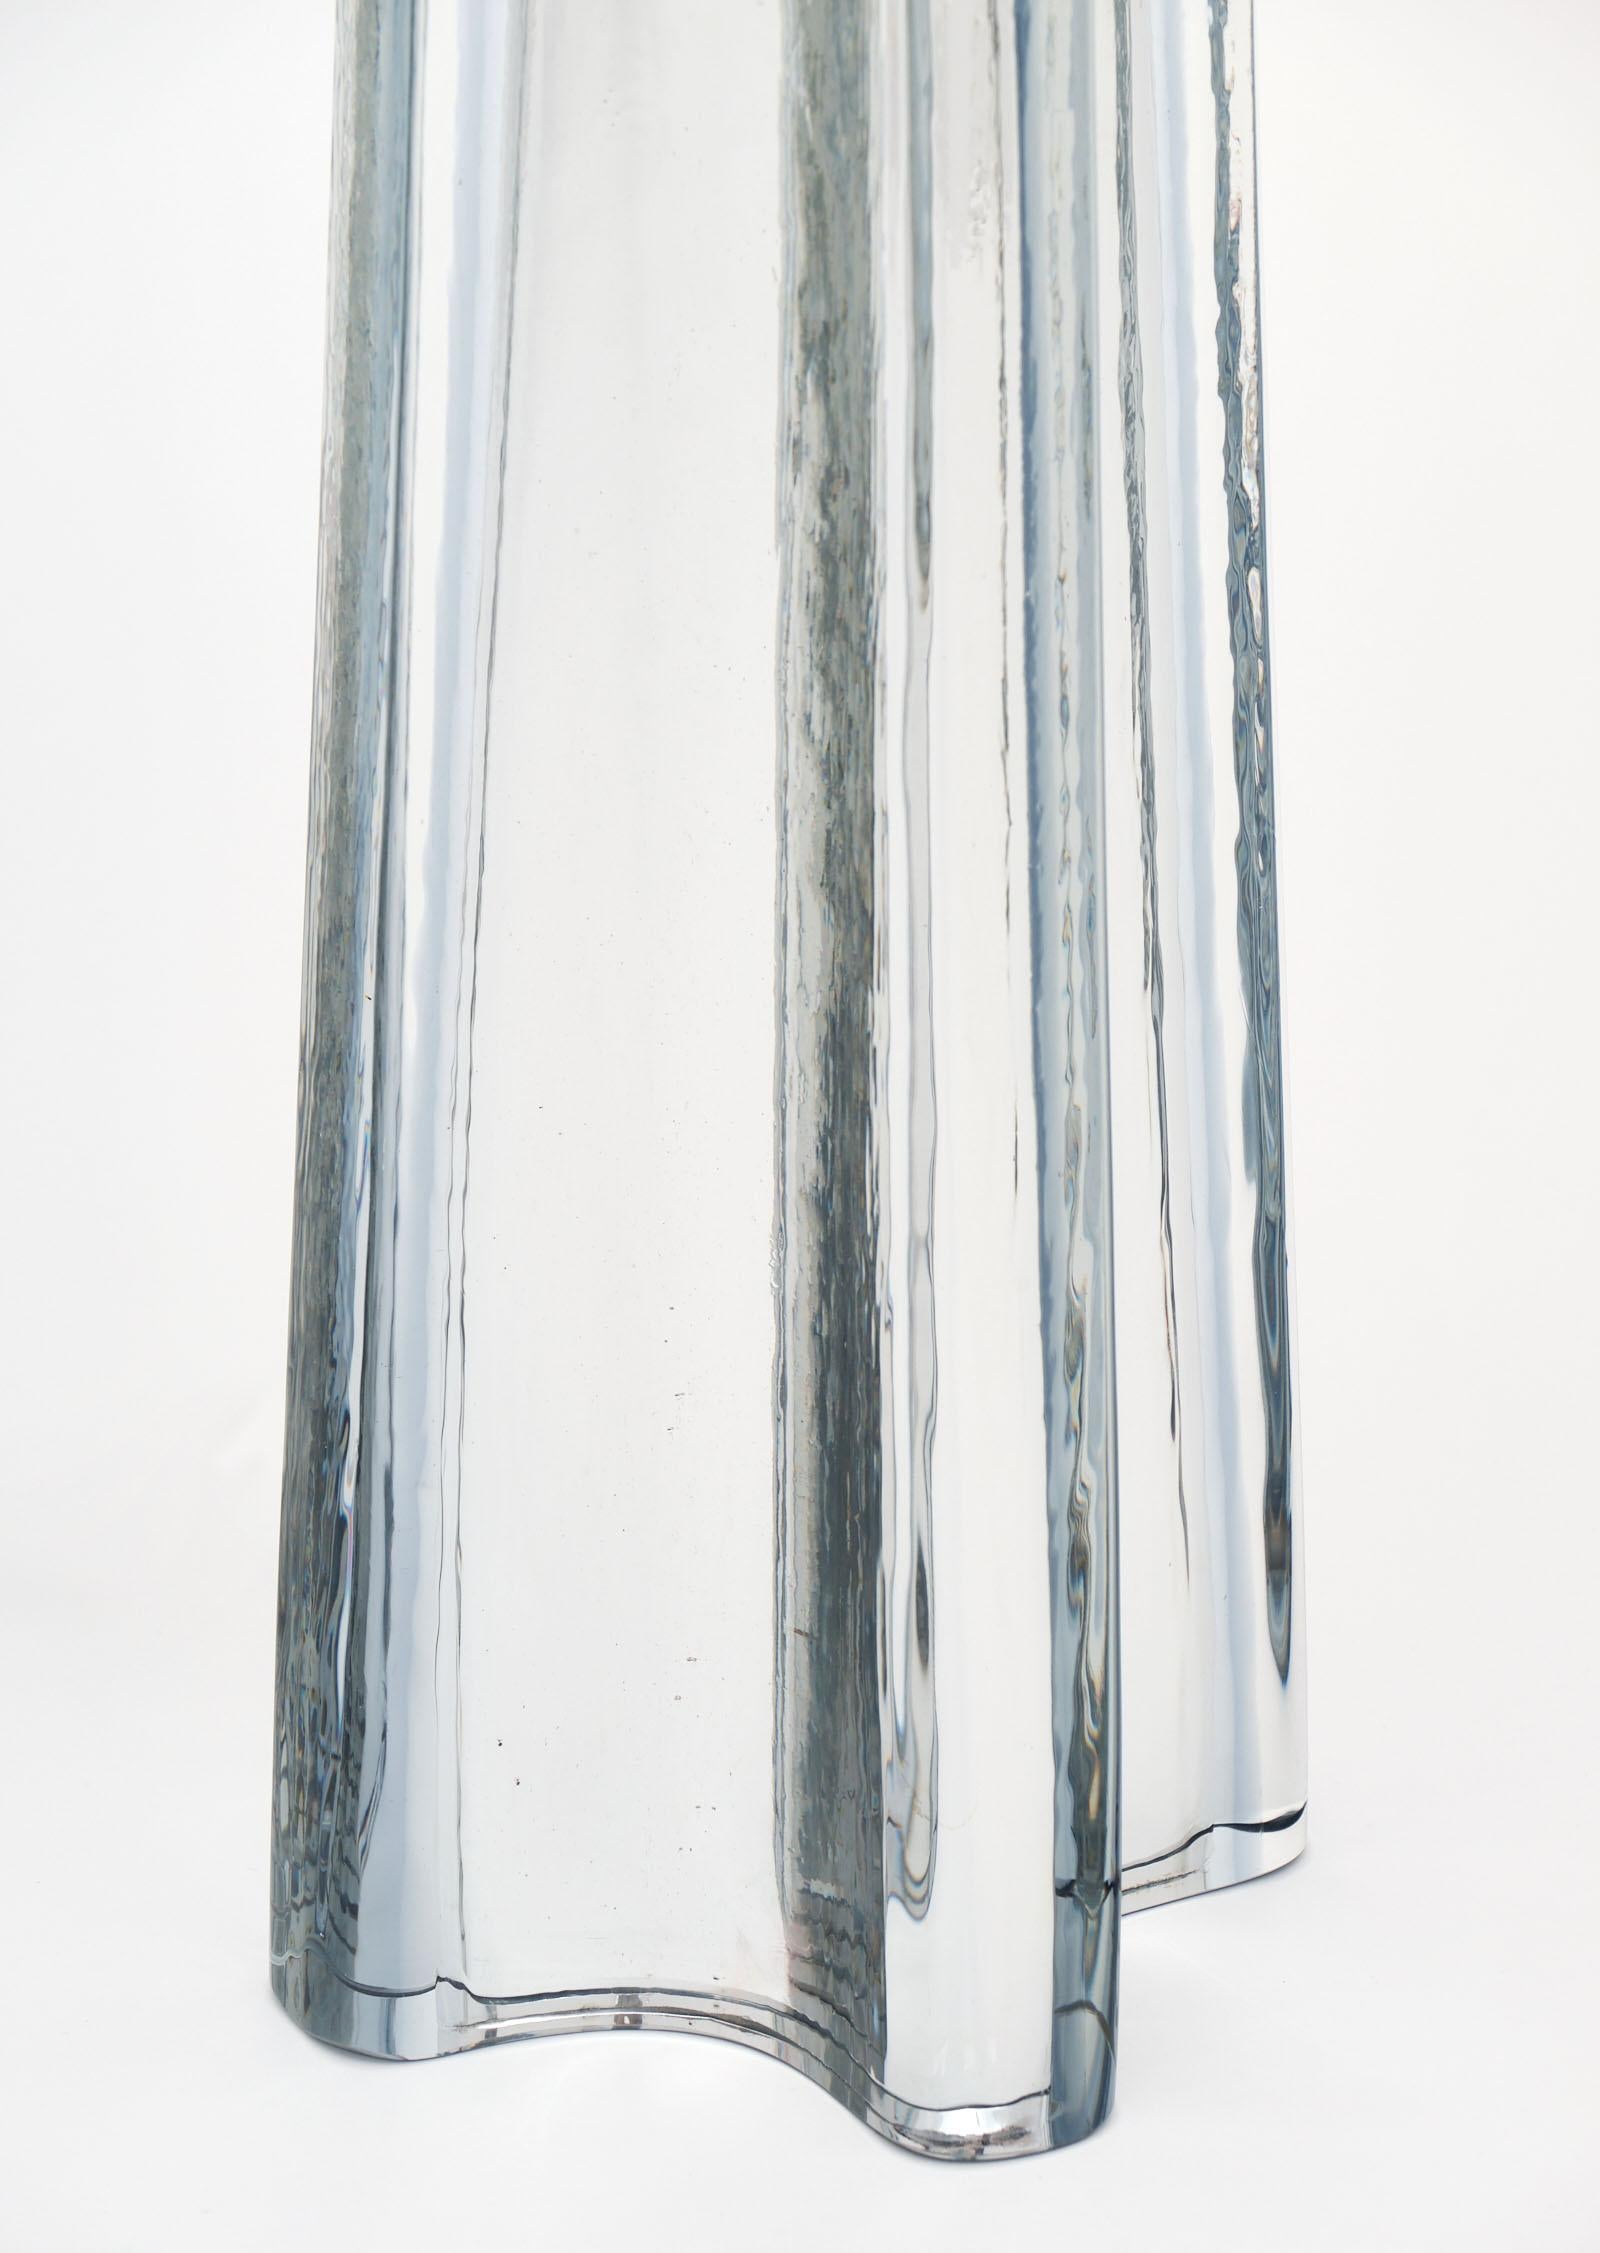 Mercury Glass “Quadrifoglio” Murano Lamps (Mercury-Glas)